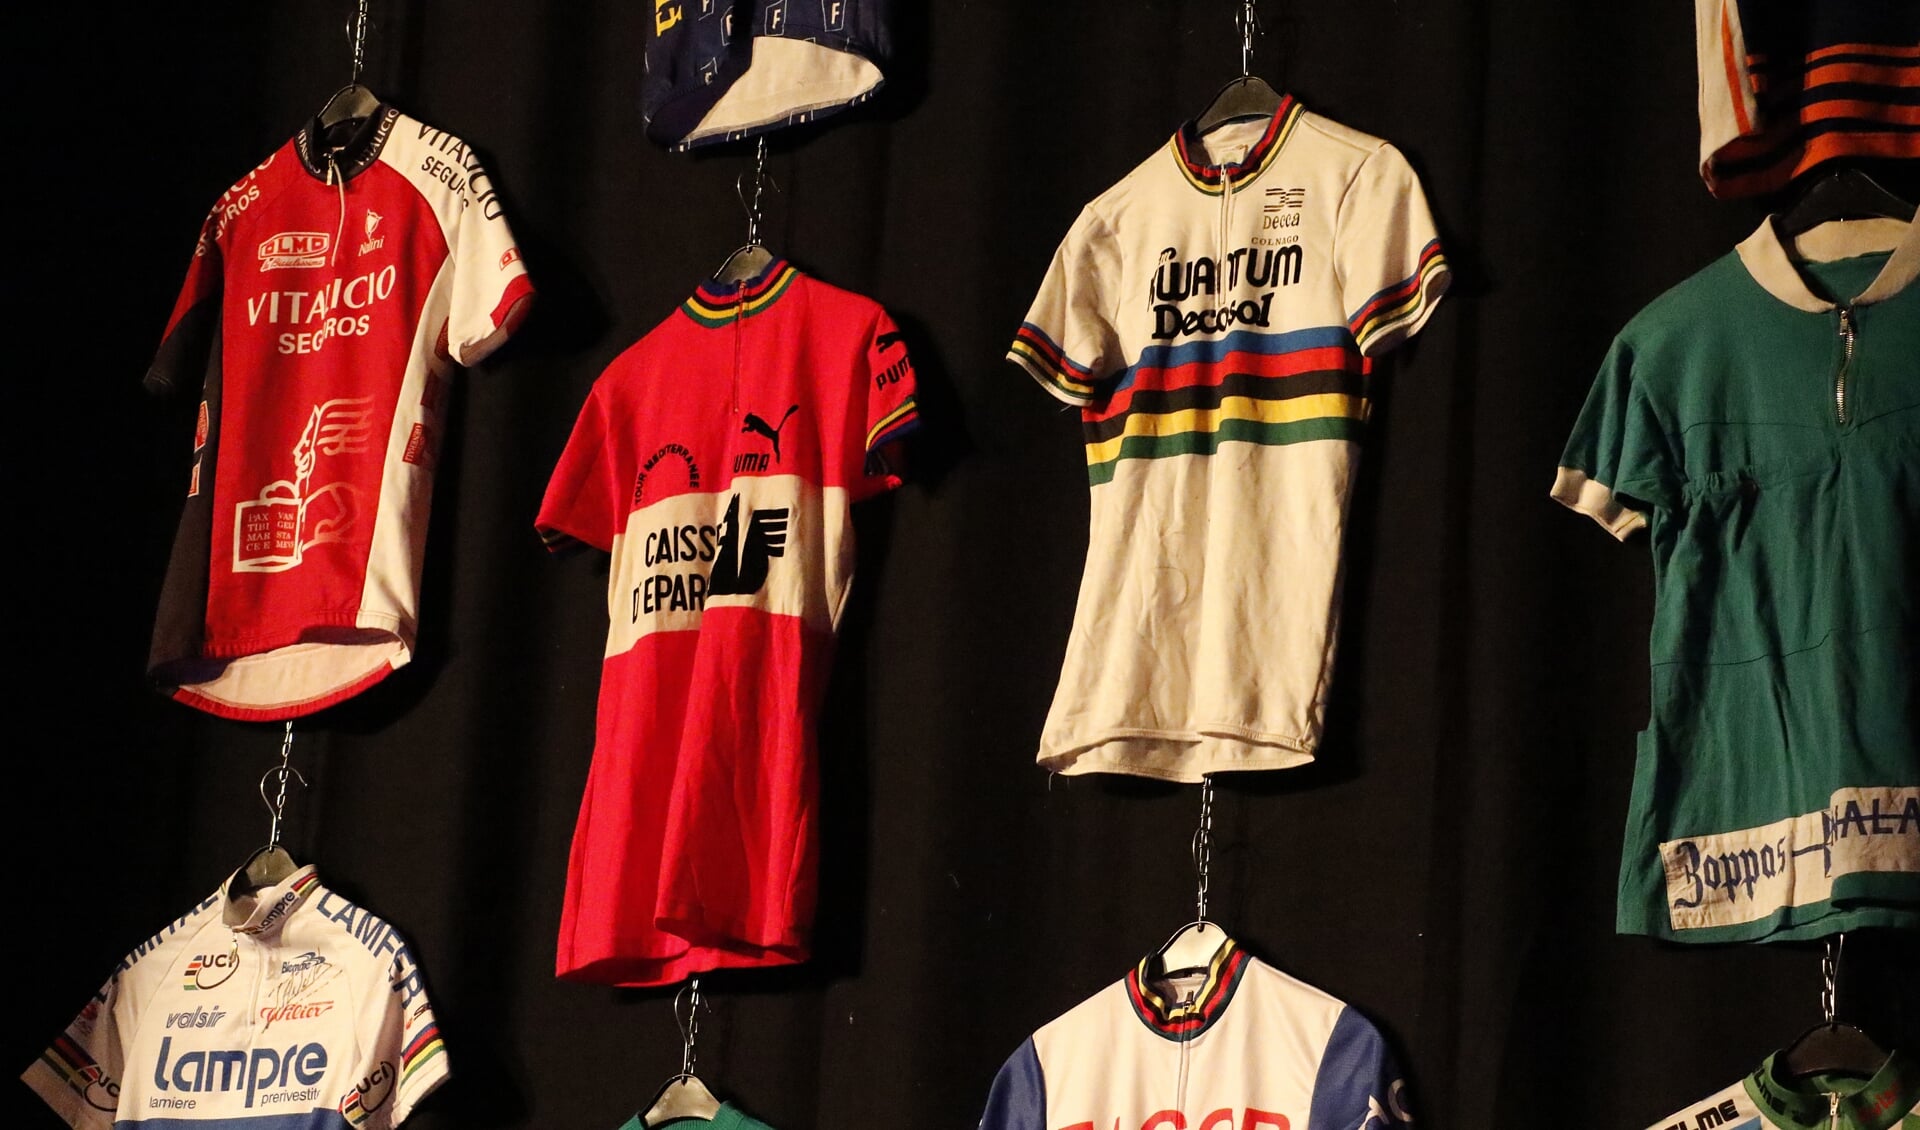 Wielerhistorie tijdens de presentatie van de Vuelta in Breda.